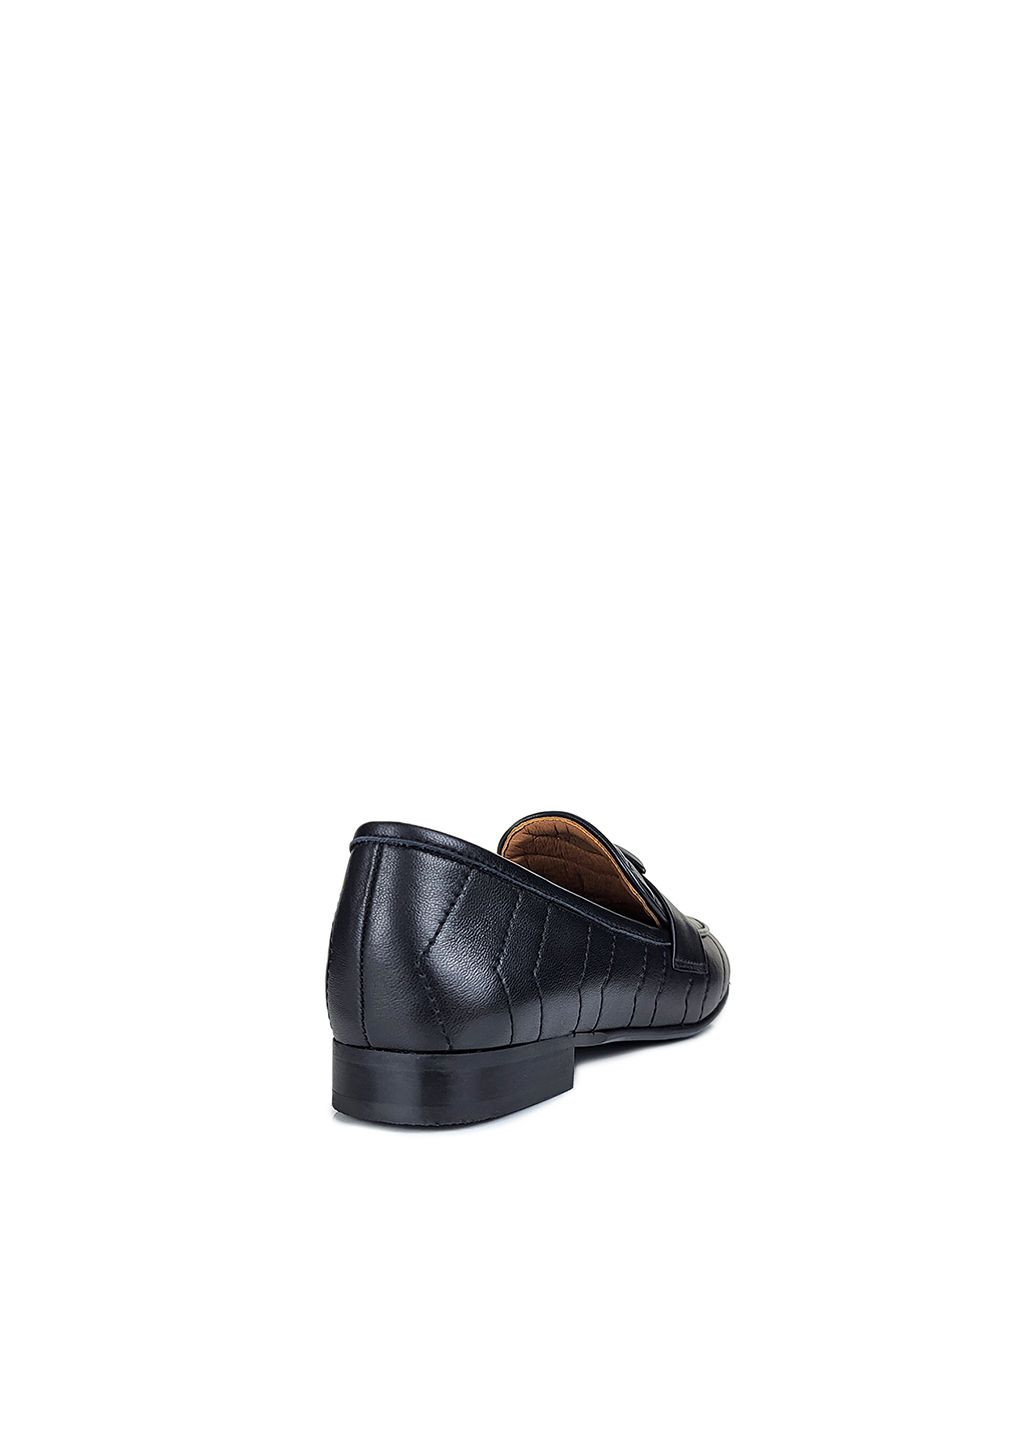 Женские кожаные лоферы черного цвета стеганые,,A23C1939-3Fч,37 Berkonty на низком каблуке